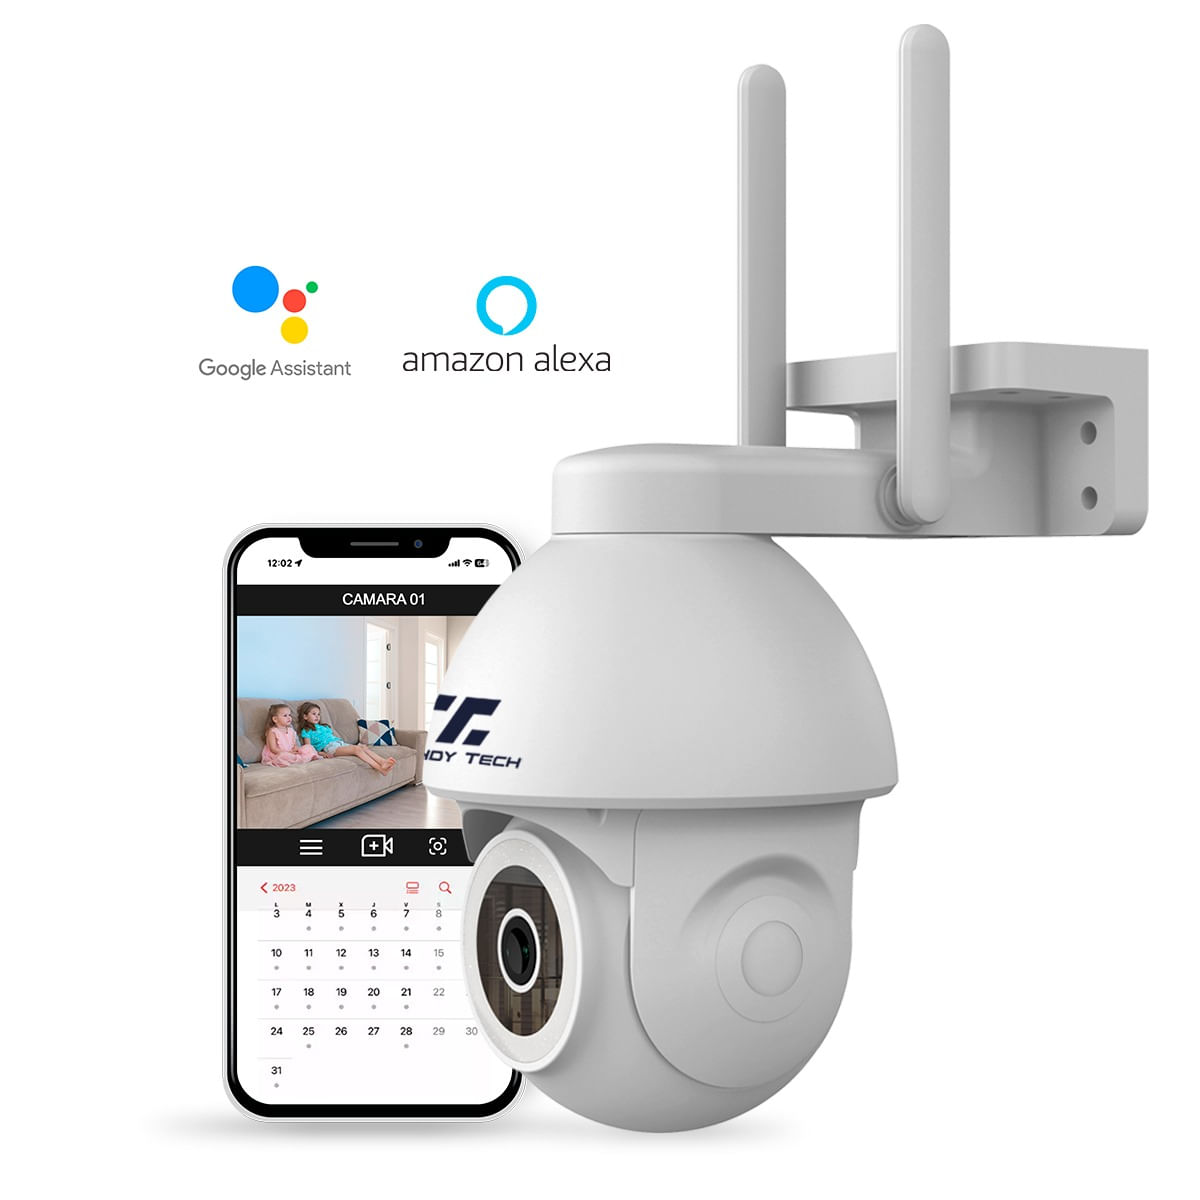 Cámara de seguridad de 4MP, Alexa, visión nocturna a color, detección humana IA, audio bidireccional